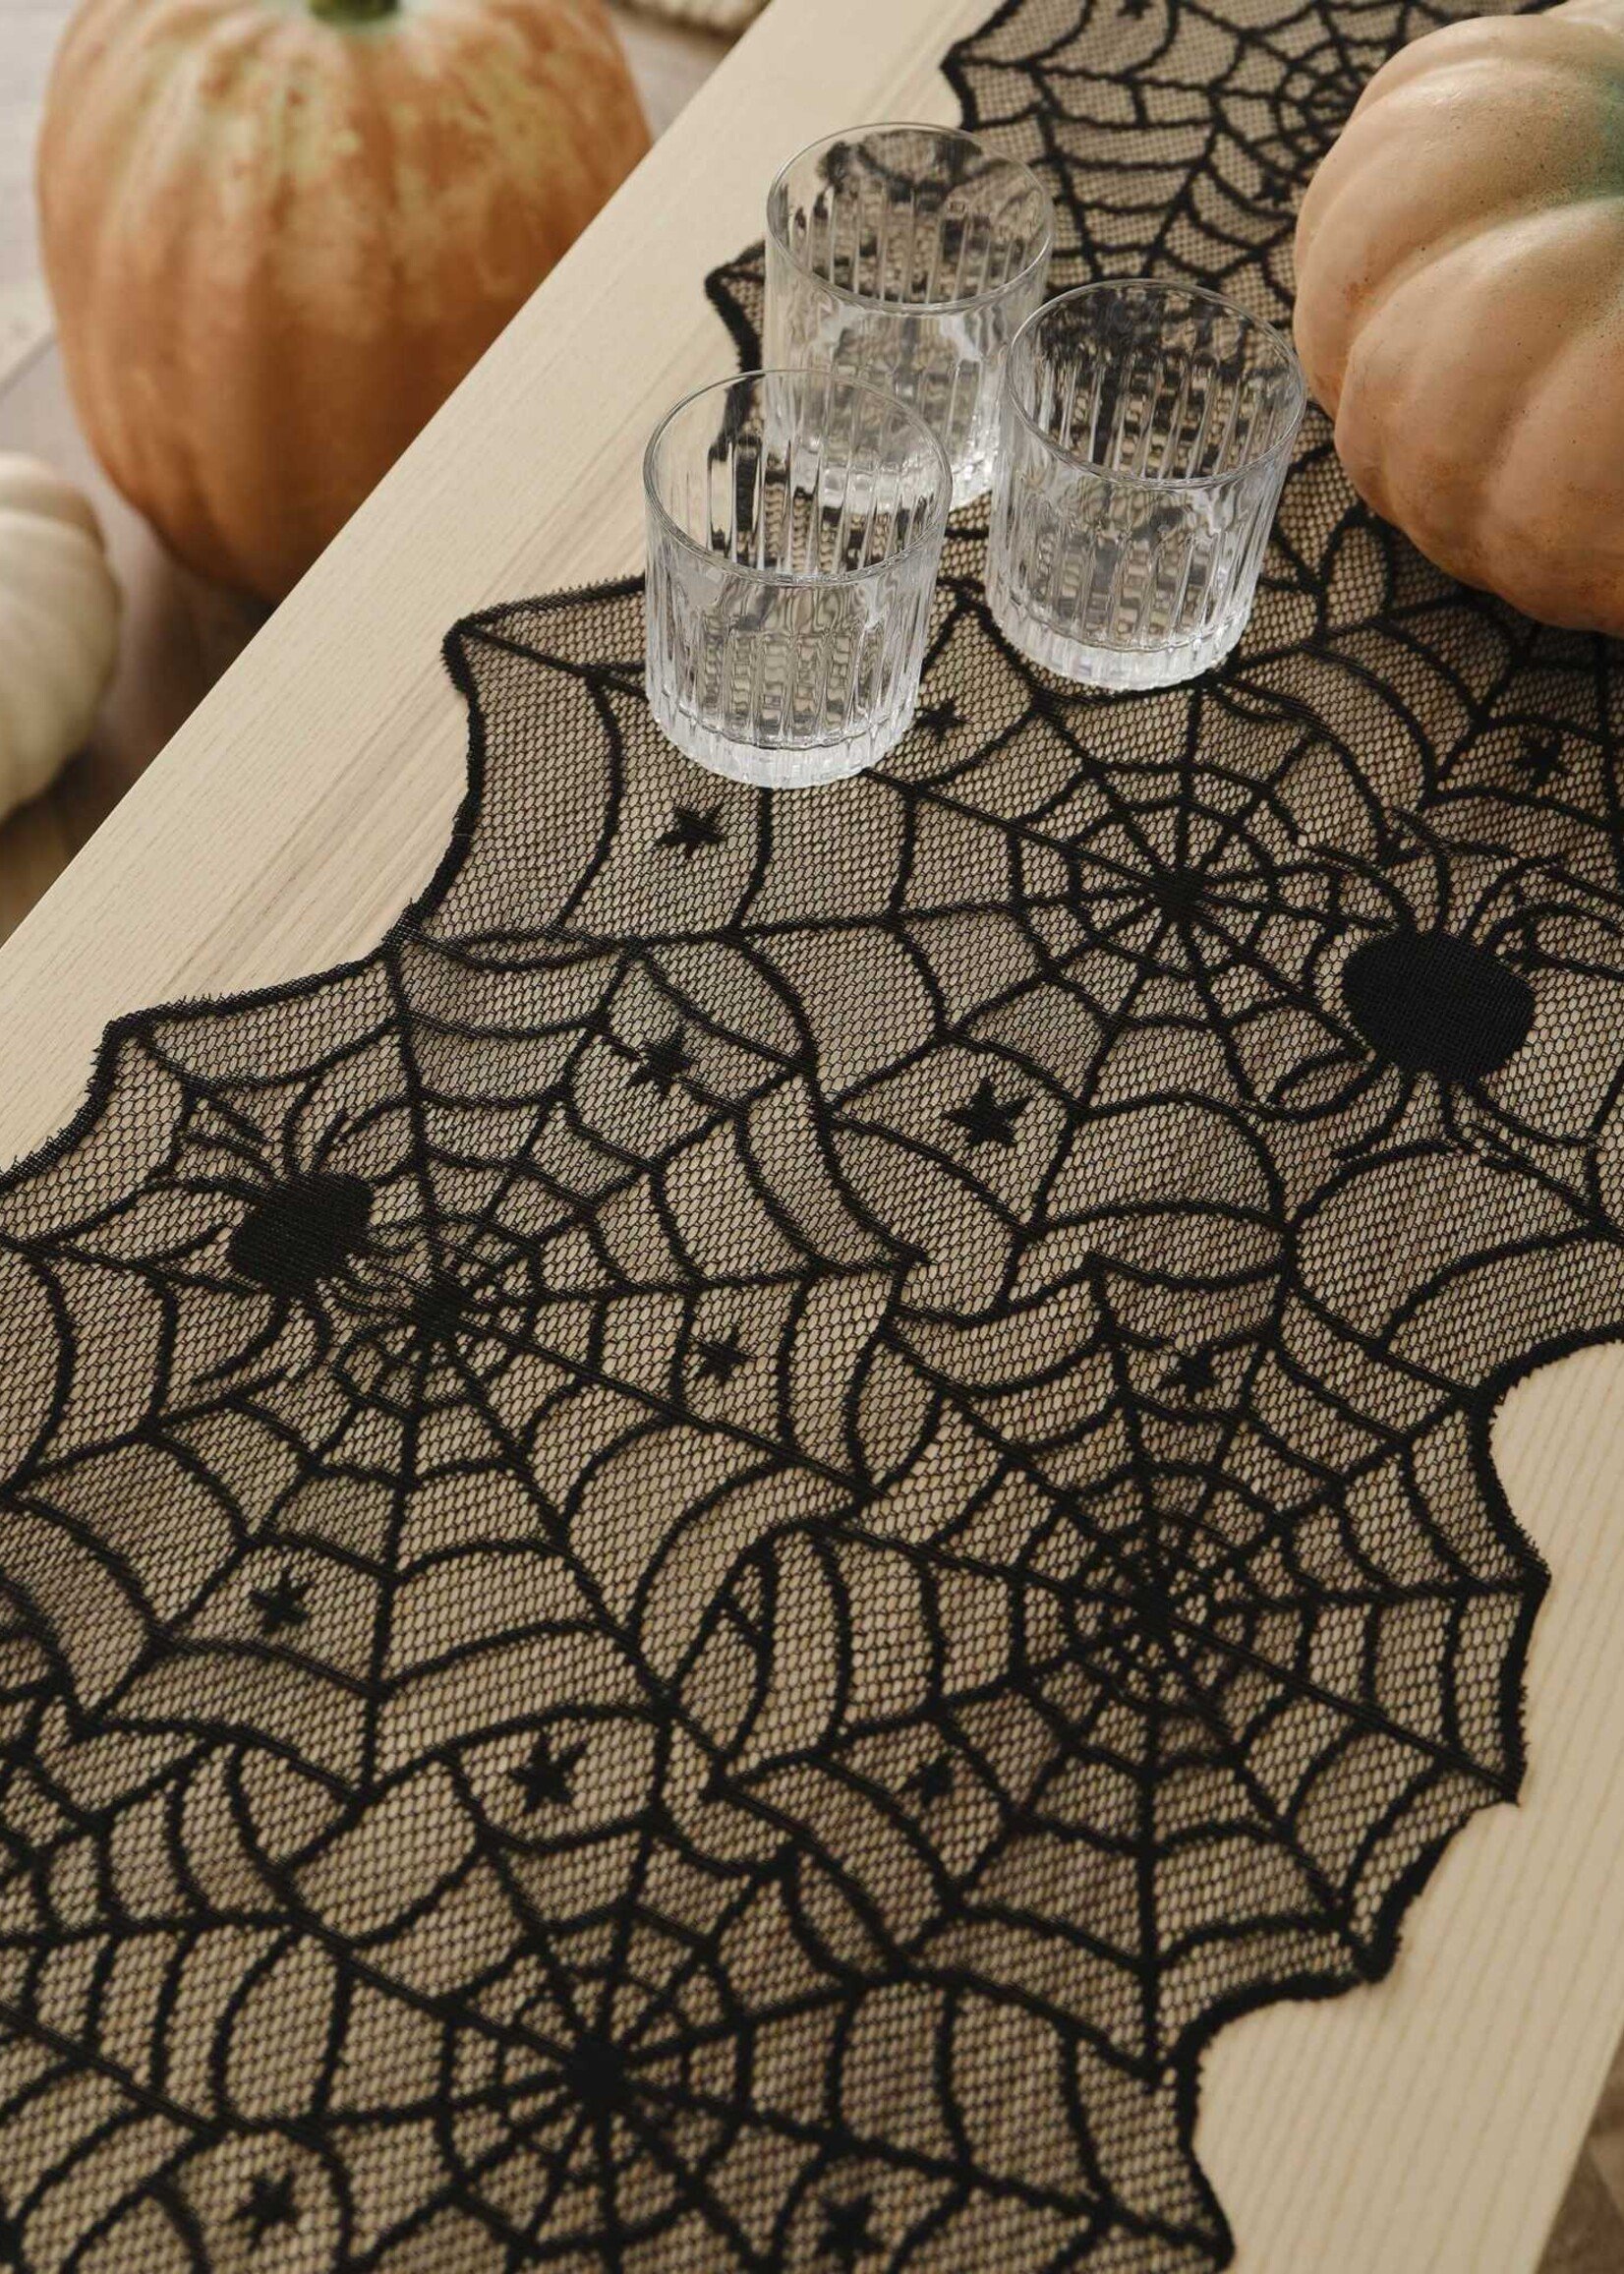 Ginger Ray Black Spider Web Halloween Table Runner 175cm